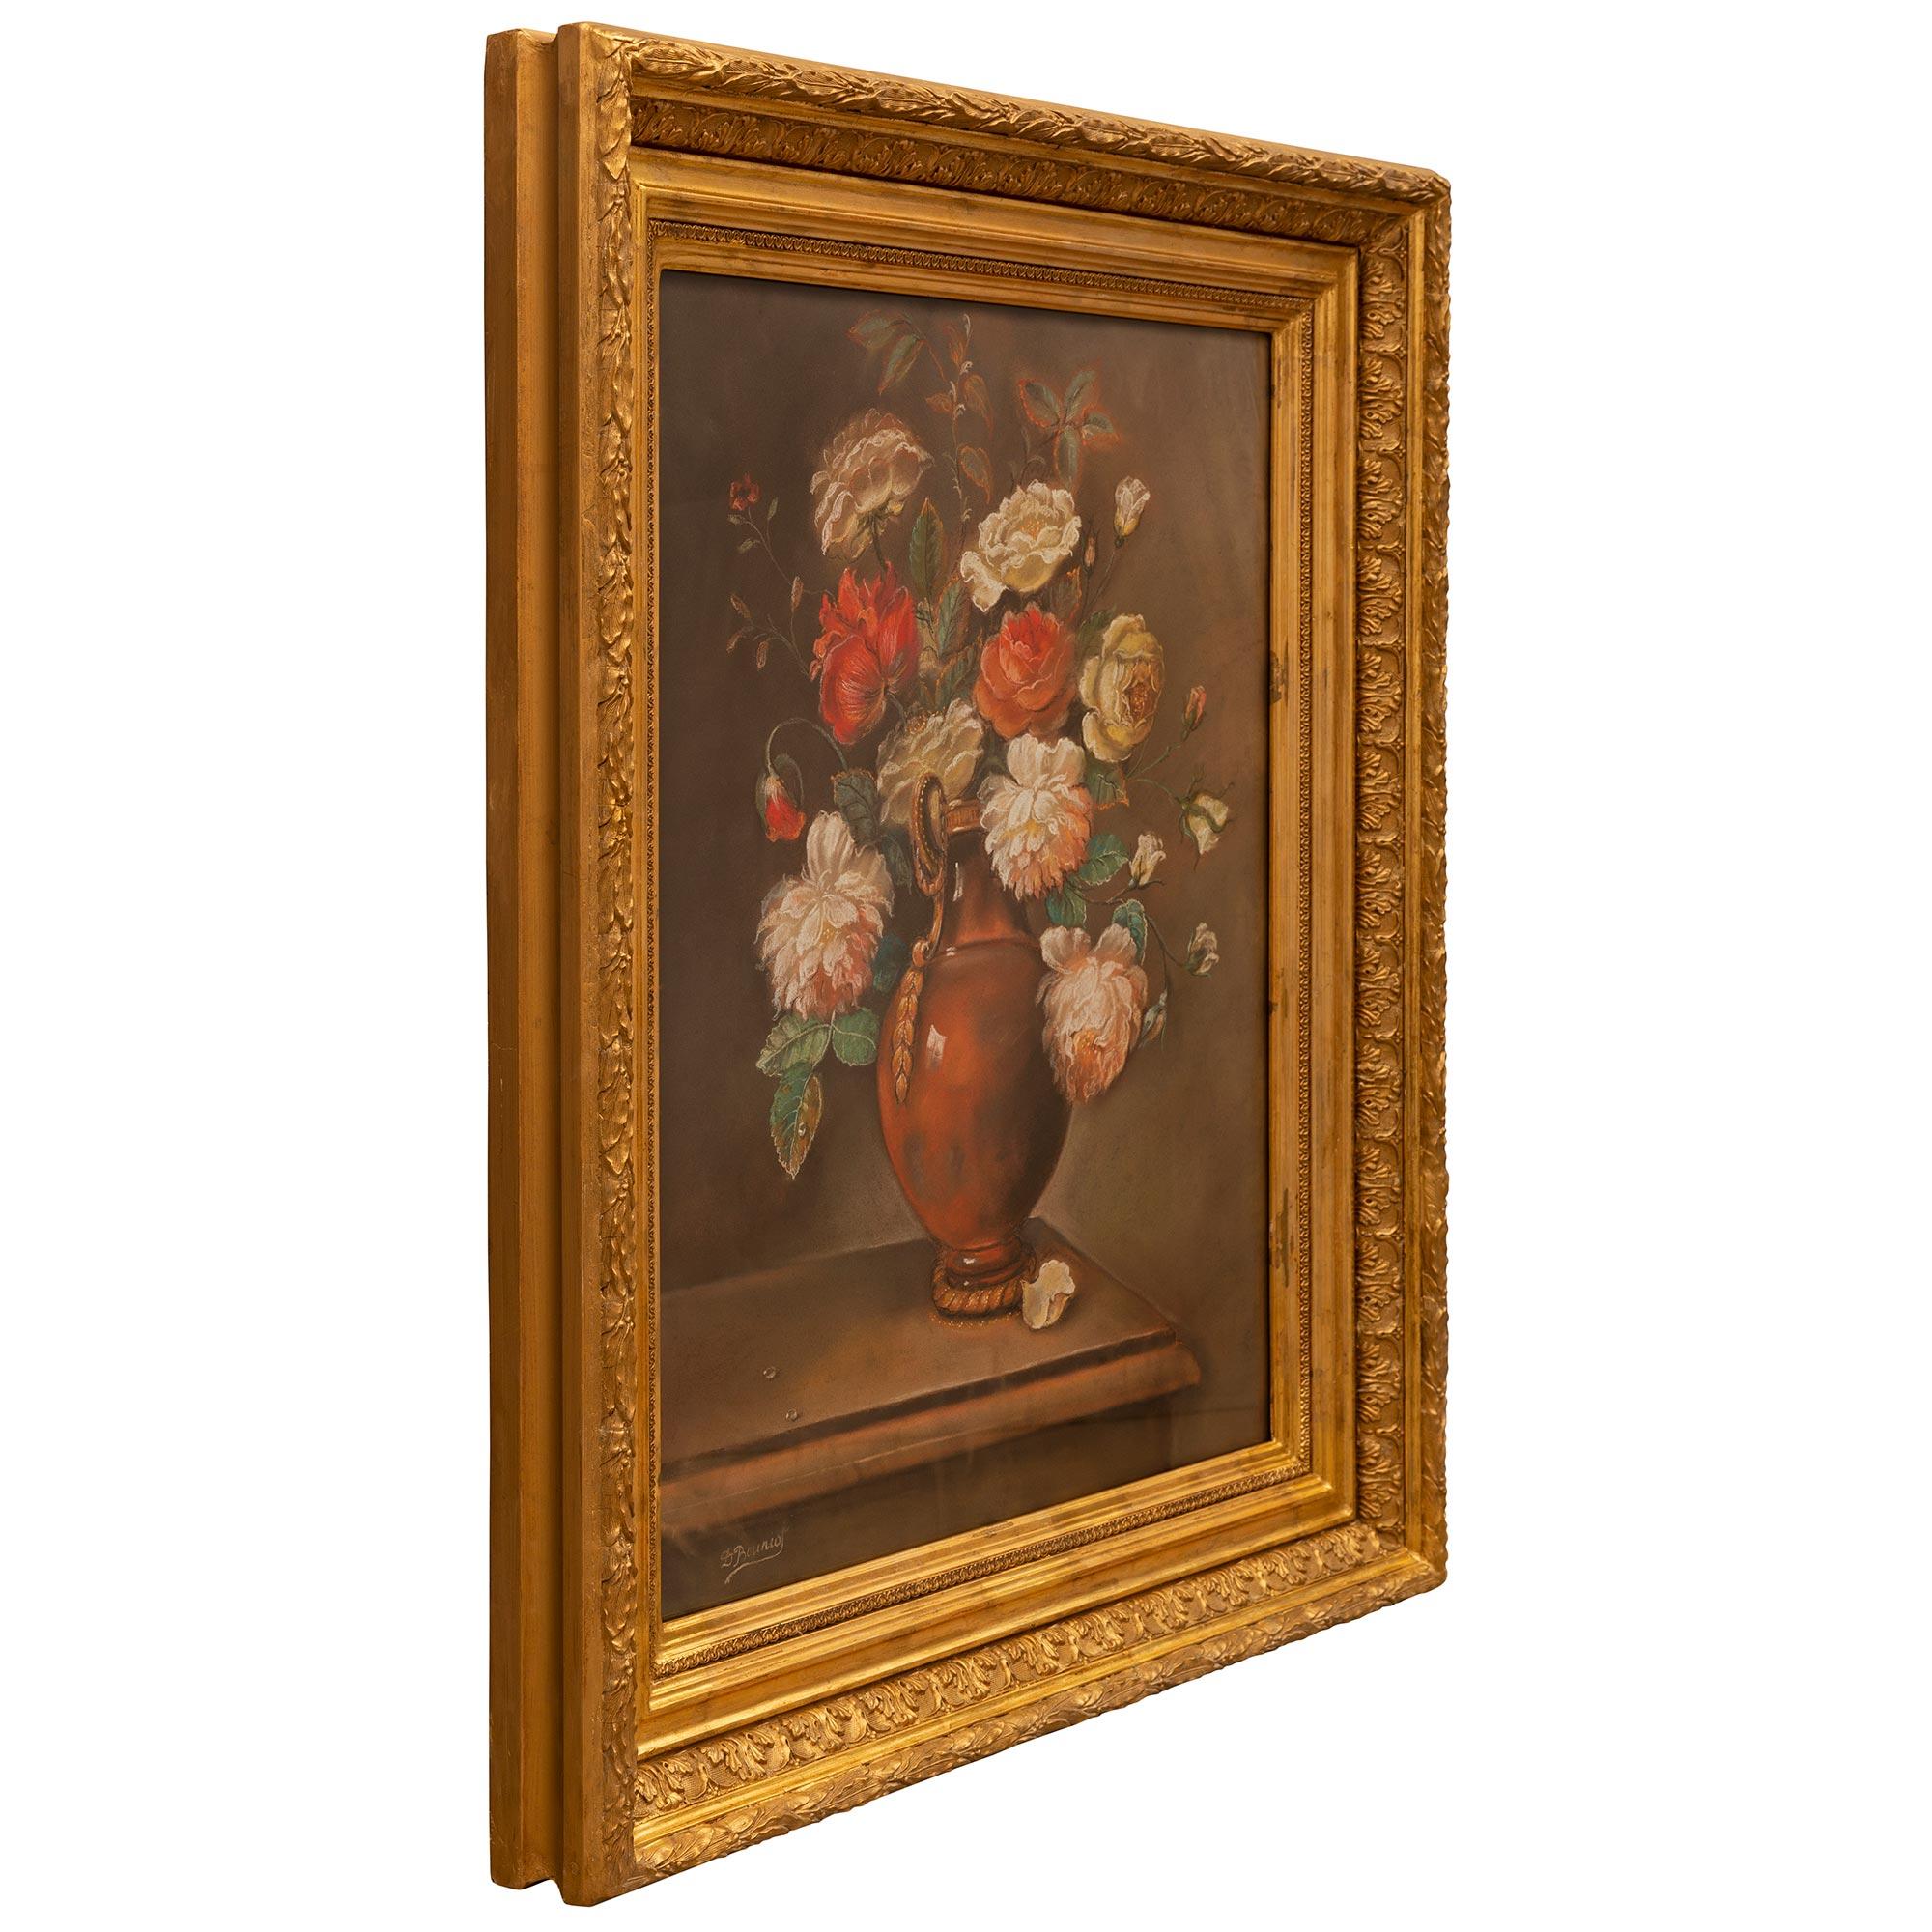 Eine schöne Continental 19. Jahrhundert Louis XVI st. Stillleben Pastell in seinem ursprünglichen Rahmen aus Goldholz gesetzt. Das Pastell zeigt ein wunderbar ausgeführtes Blumenarrangement mit schönen bunten Blumen in einer charmanten Vase auf